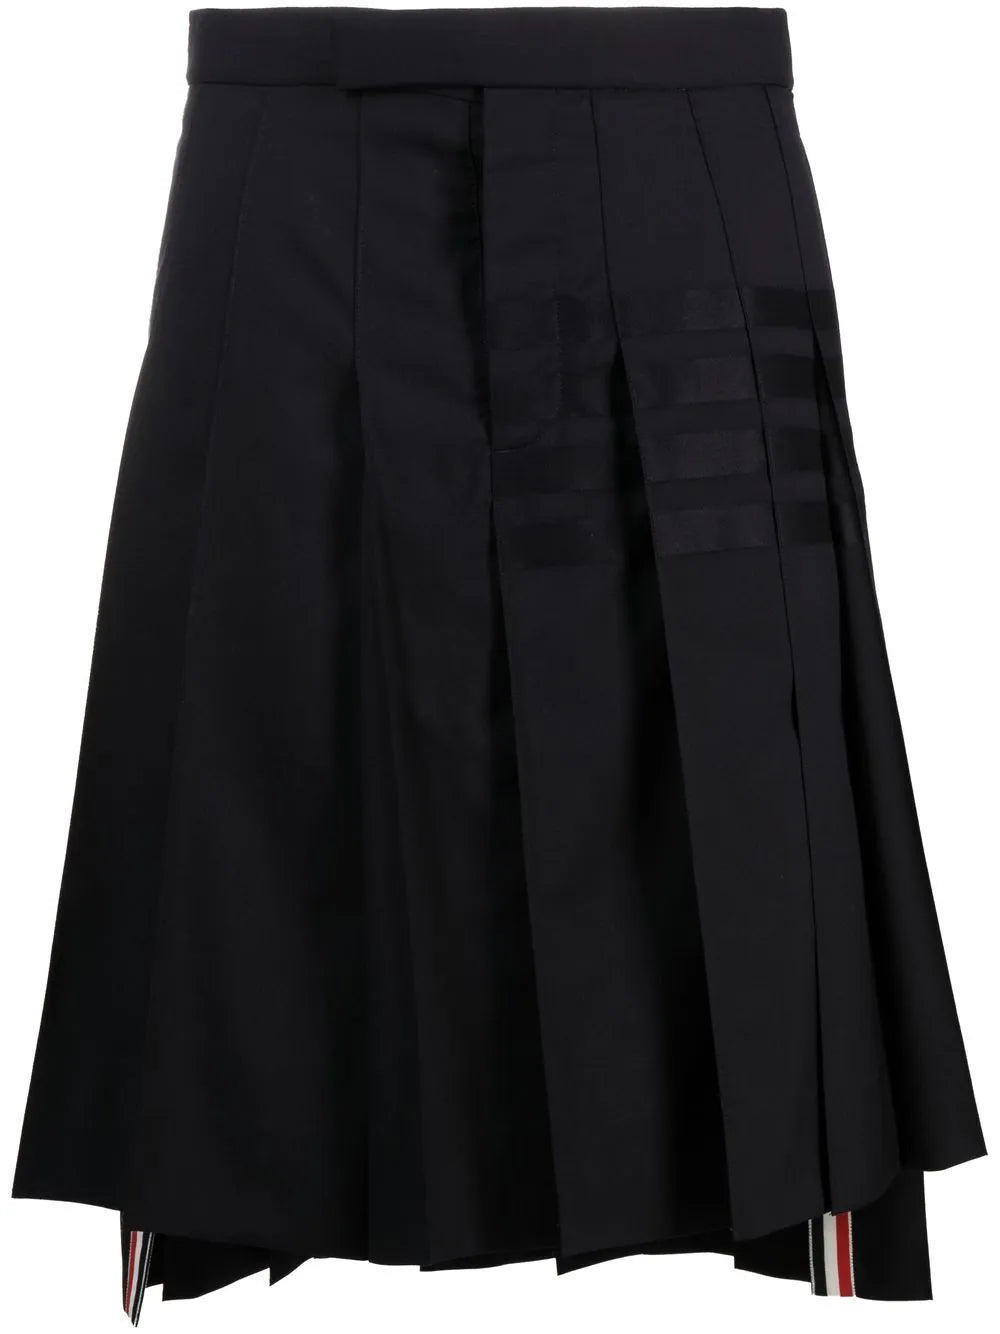 Thom Browne Men's 4-Bar Woollen Pleated Skirt,